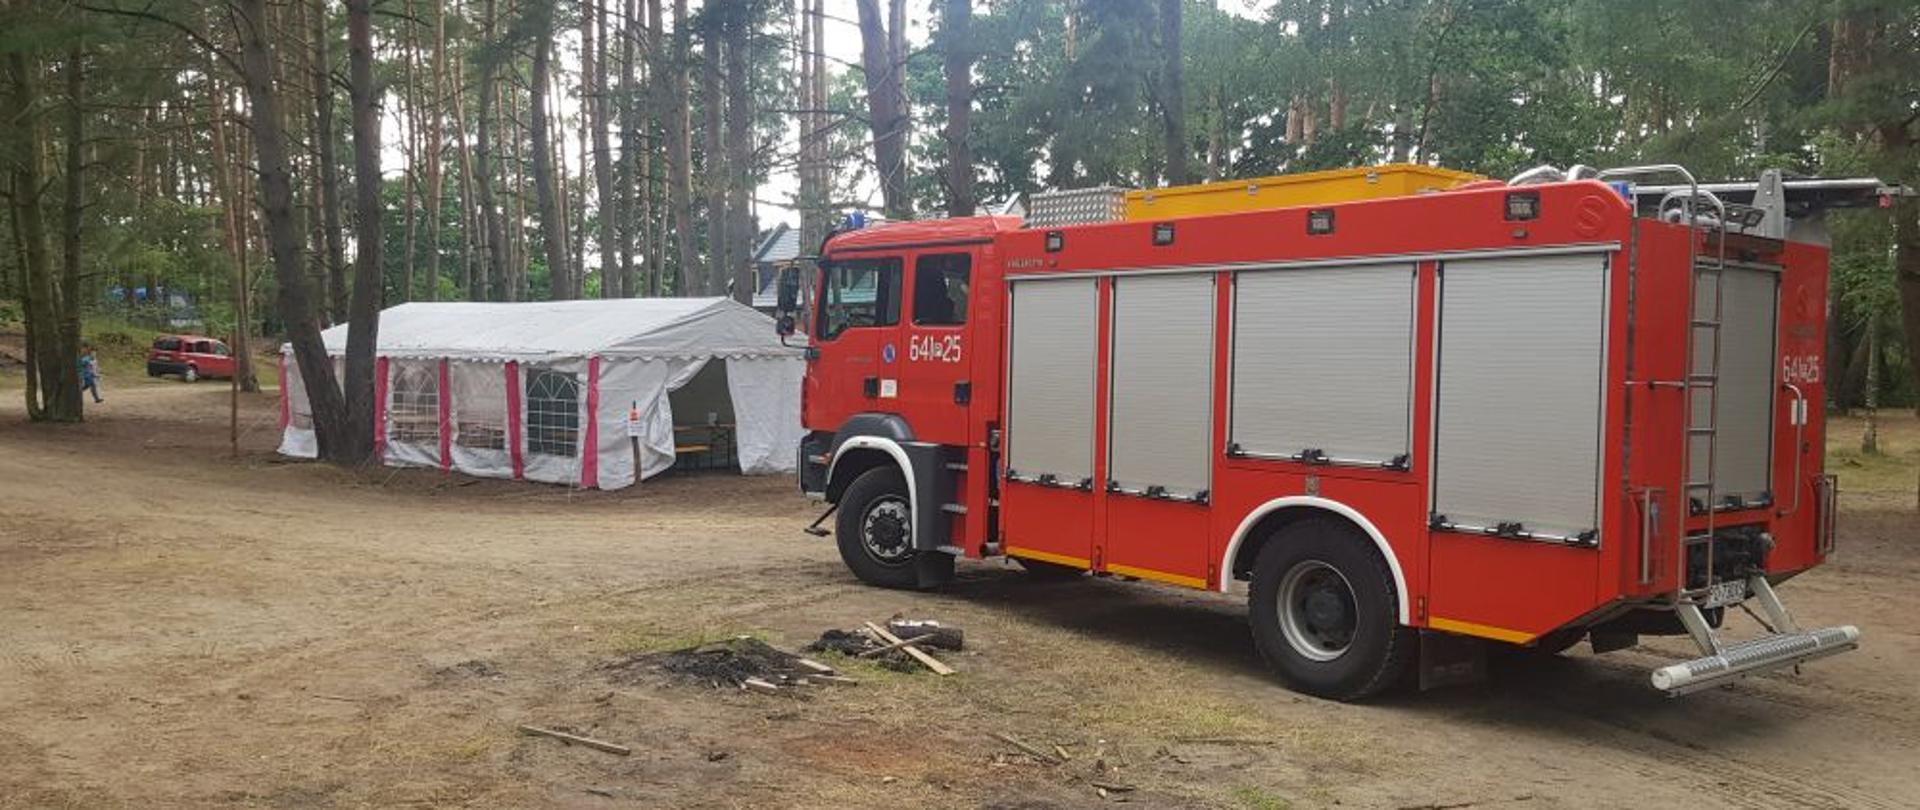 Na pierwszym planie ciężki samochód ratowniczo-gaśniczy wolsztyńskich strażaków, przygotowany do ewentualnego wyjazdu. W tle namioty harcerskie oraz las.